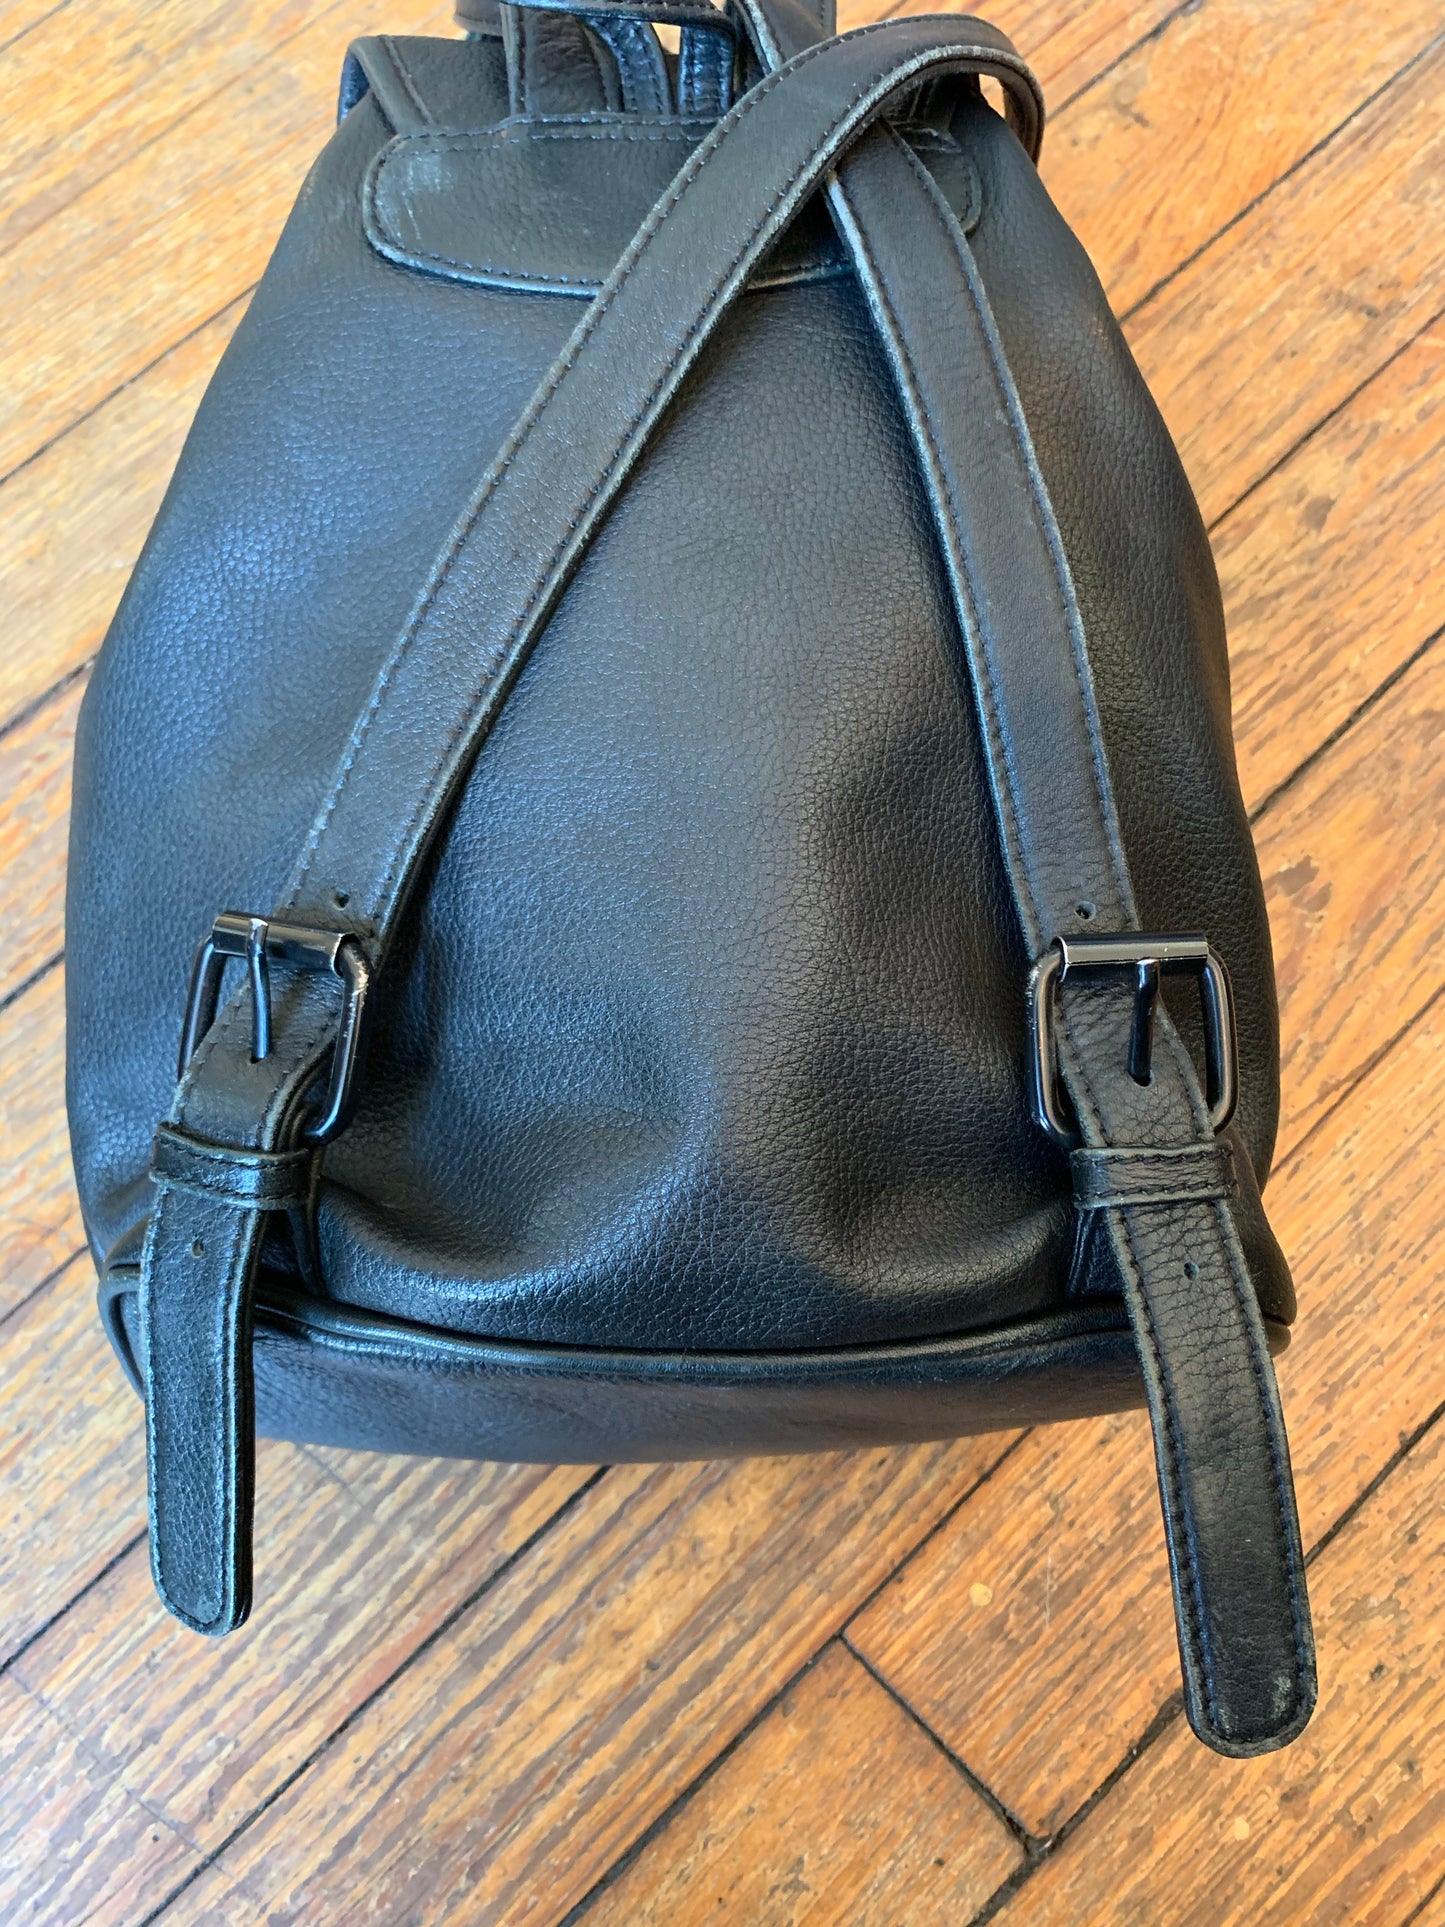 Harley-Davidson Soft Black Leather Drawstring Backpack